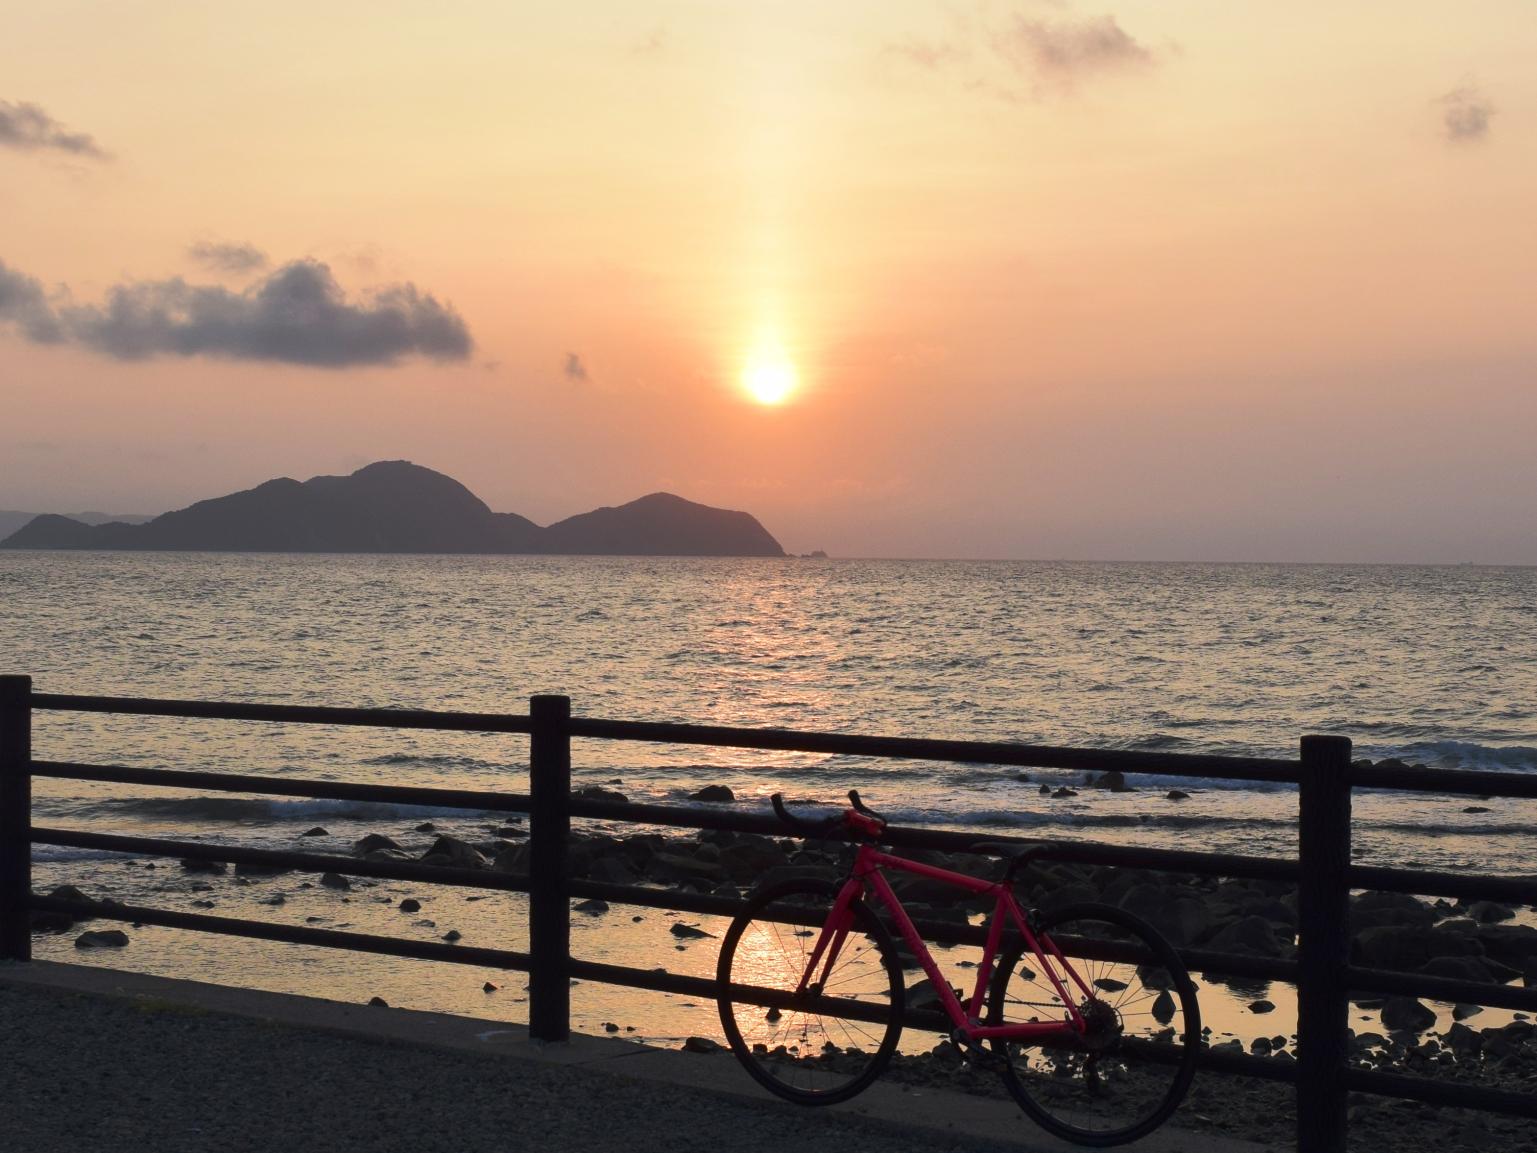 夕阳十分美丽的运贺·宗像自行车道